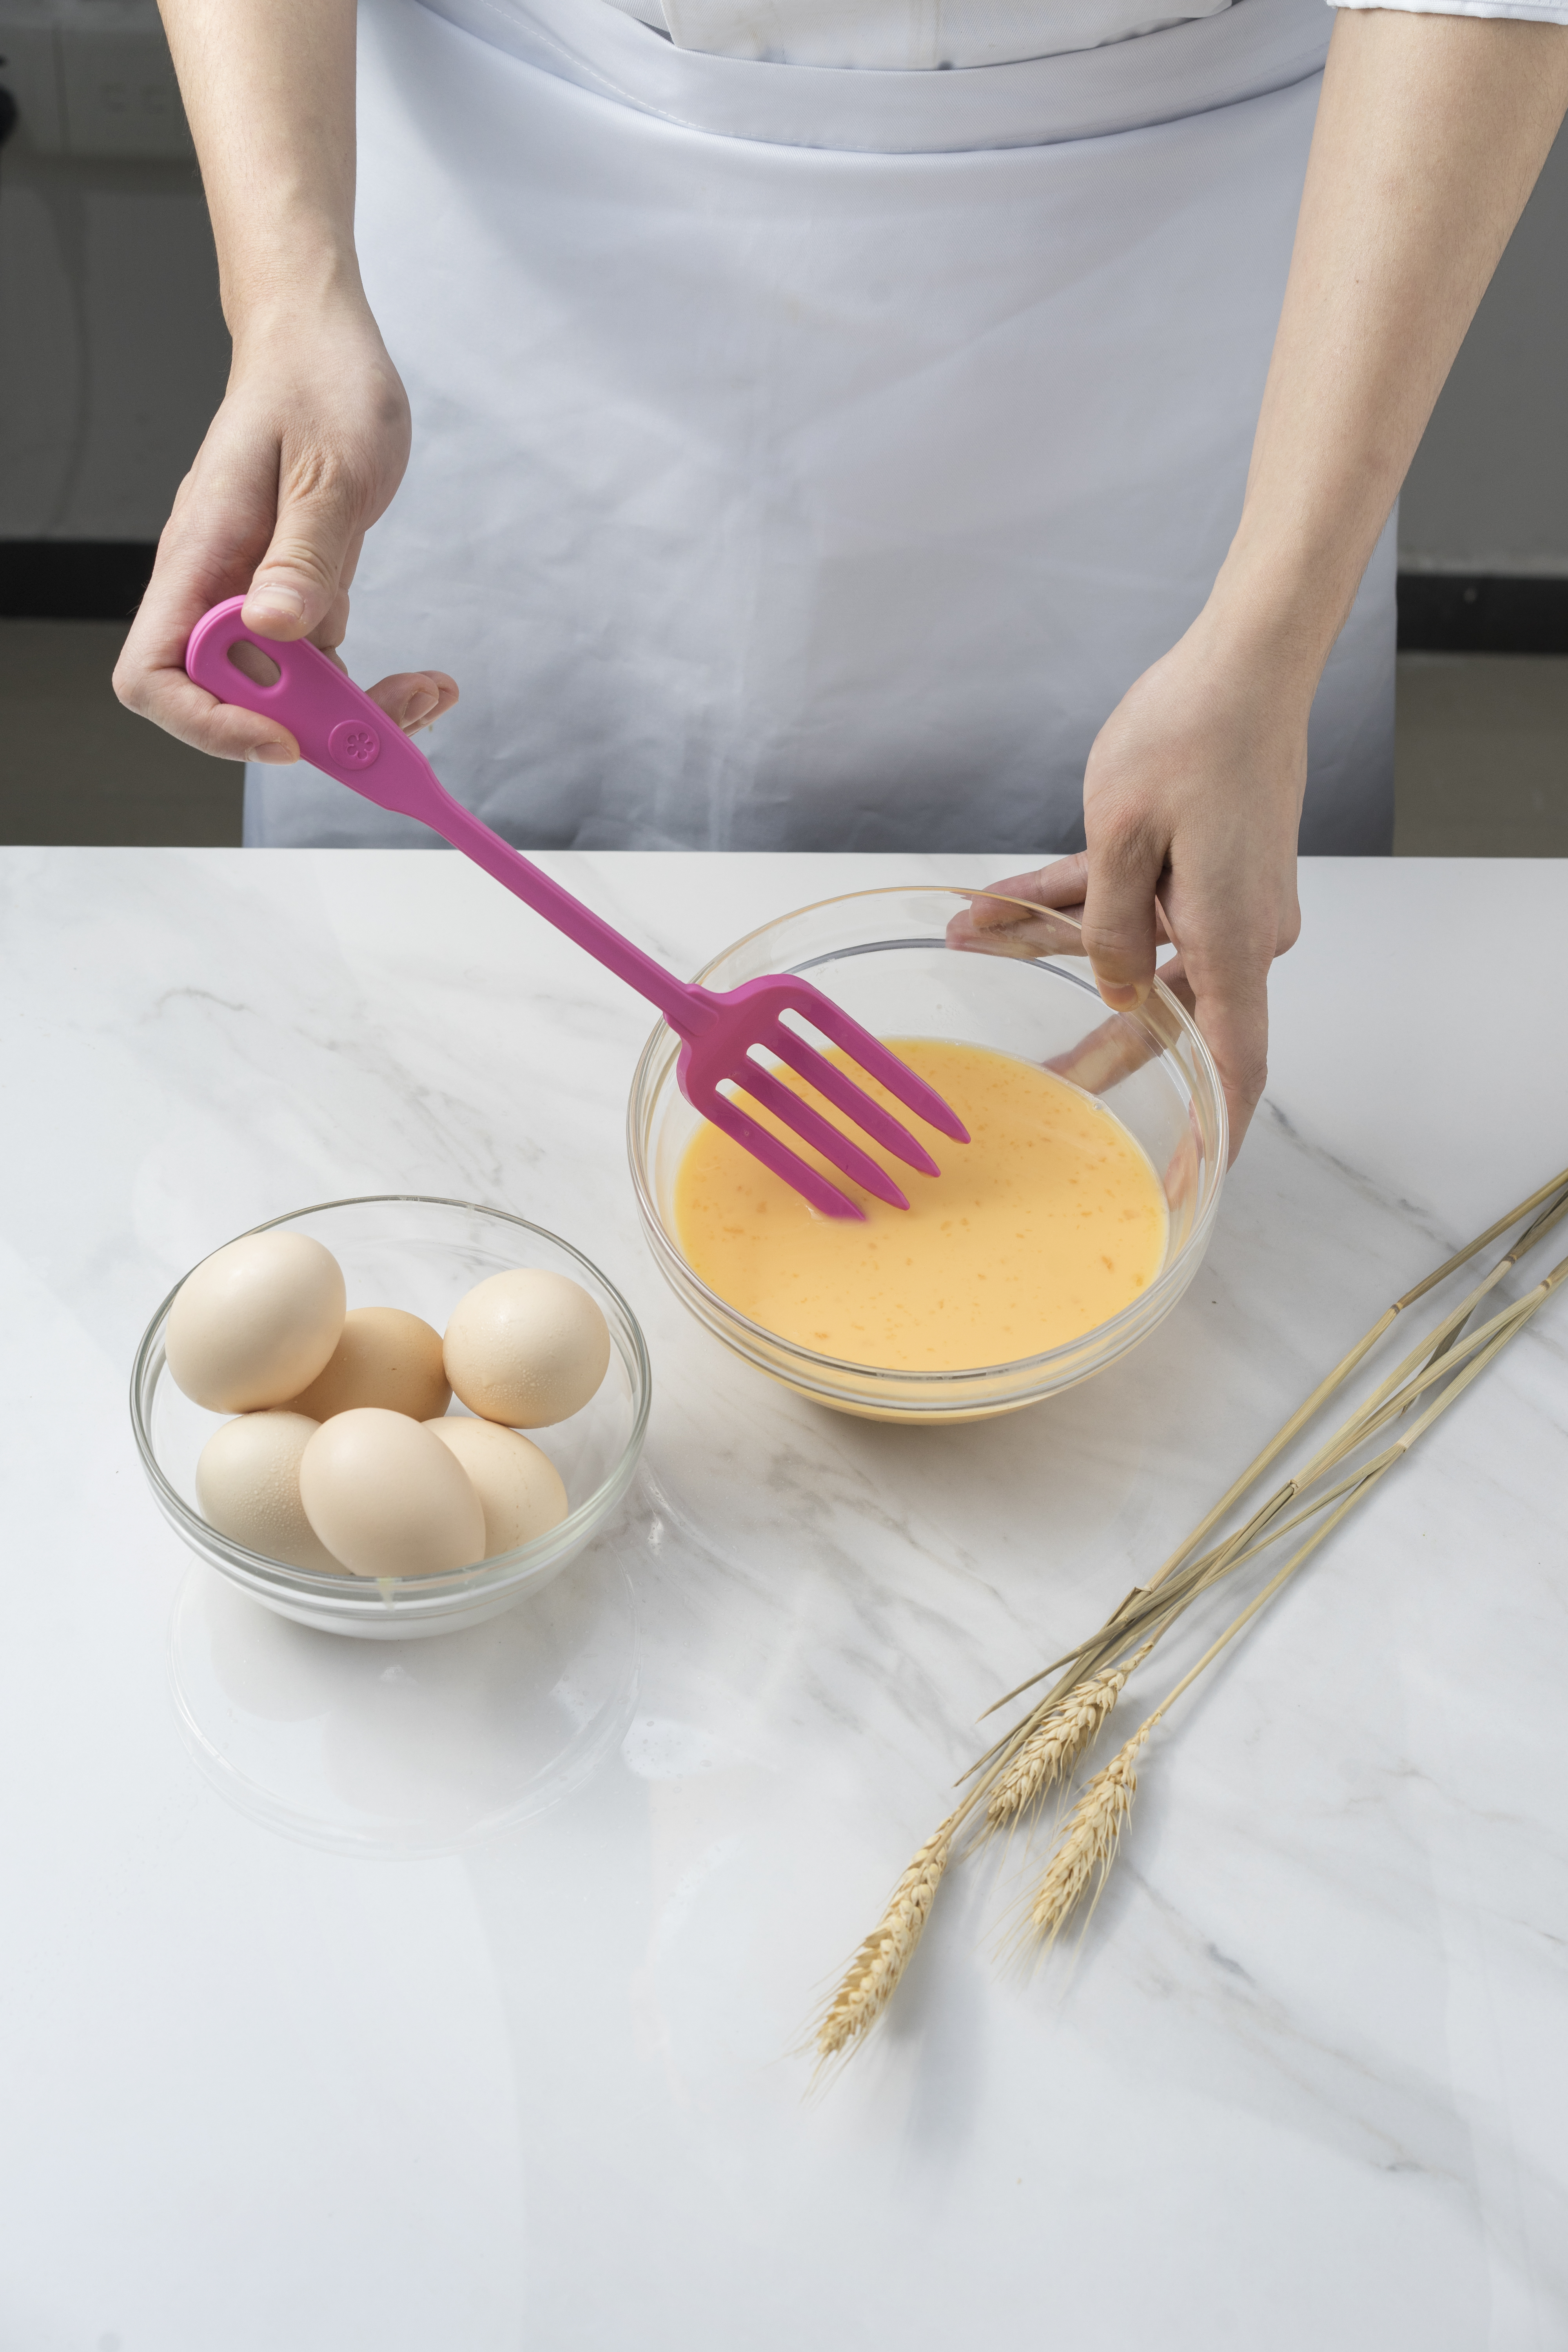 Eine Person schlägt Eiermischung in einer klaren Schüssel mit einem pinken Silikonschneebesen, daneben eine Schüssel mit ganzen Eiern und Weizenähren auf einer Marmoroberfläche